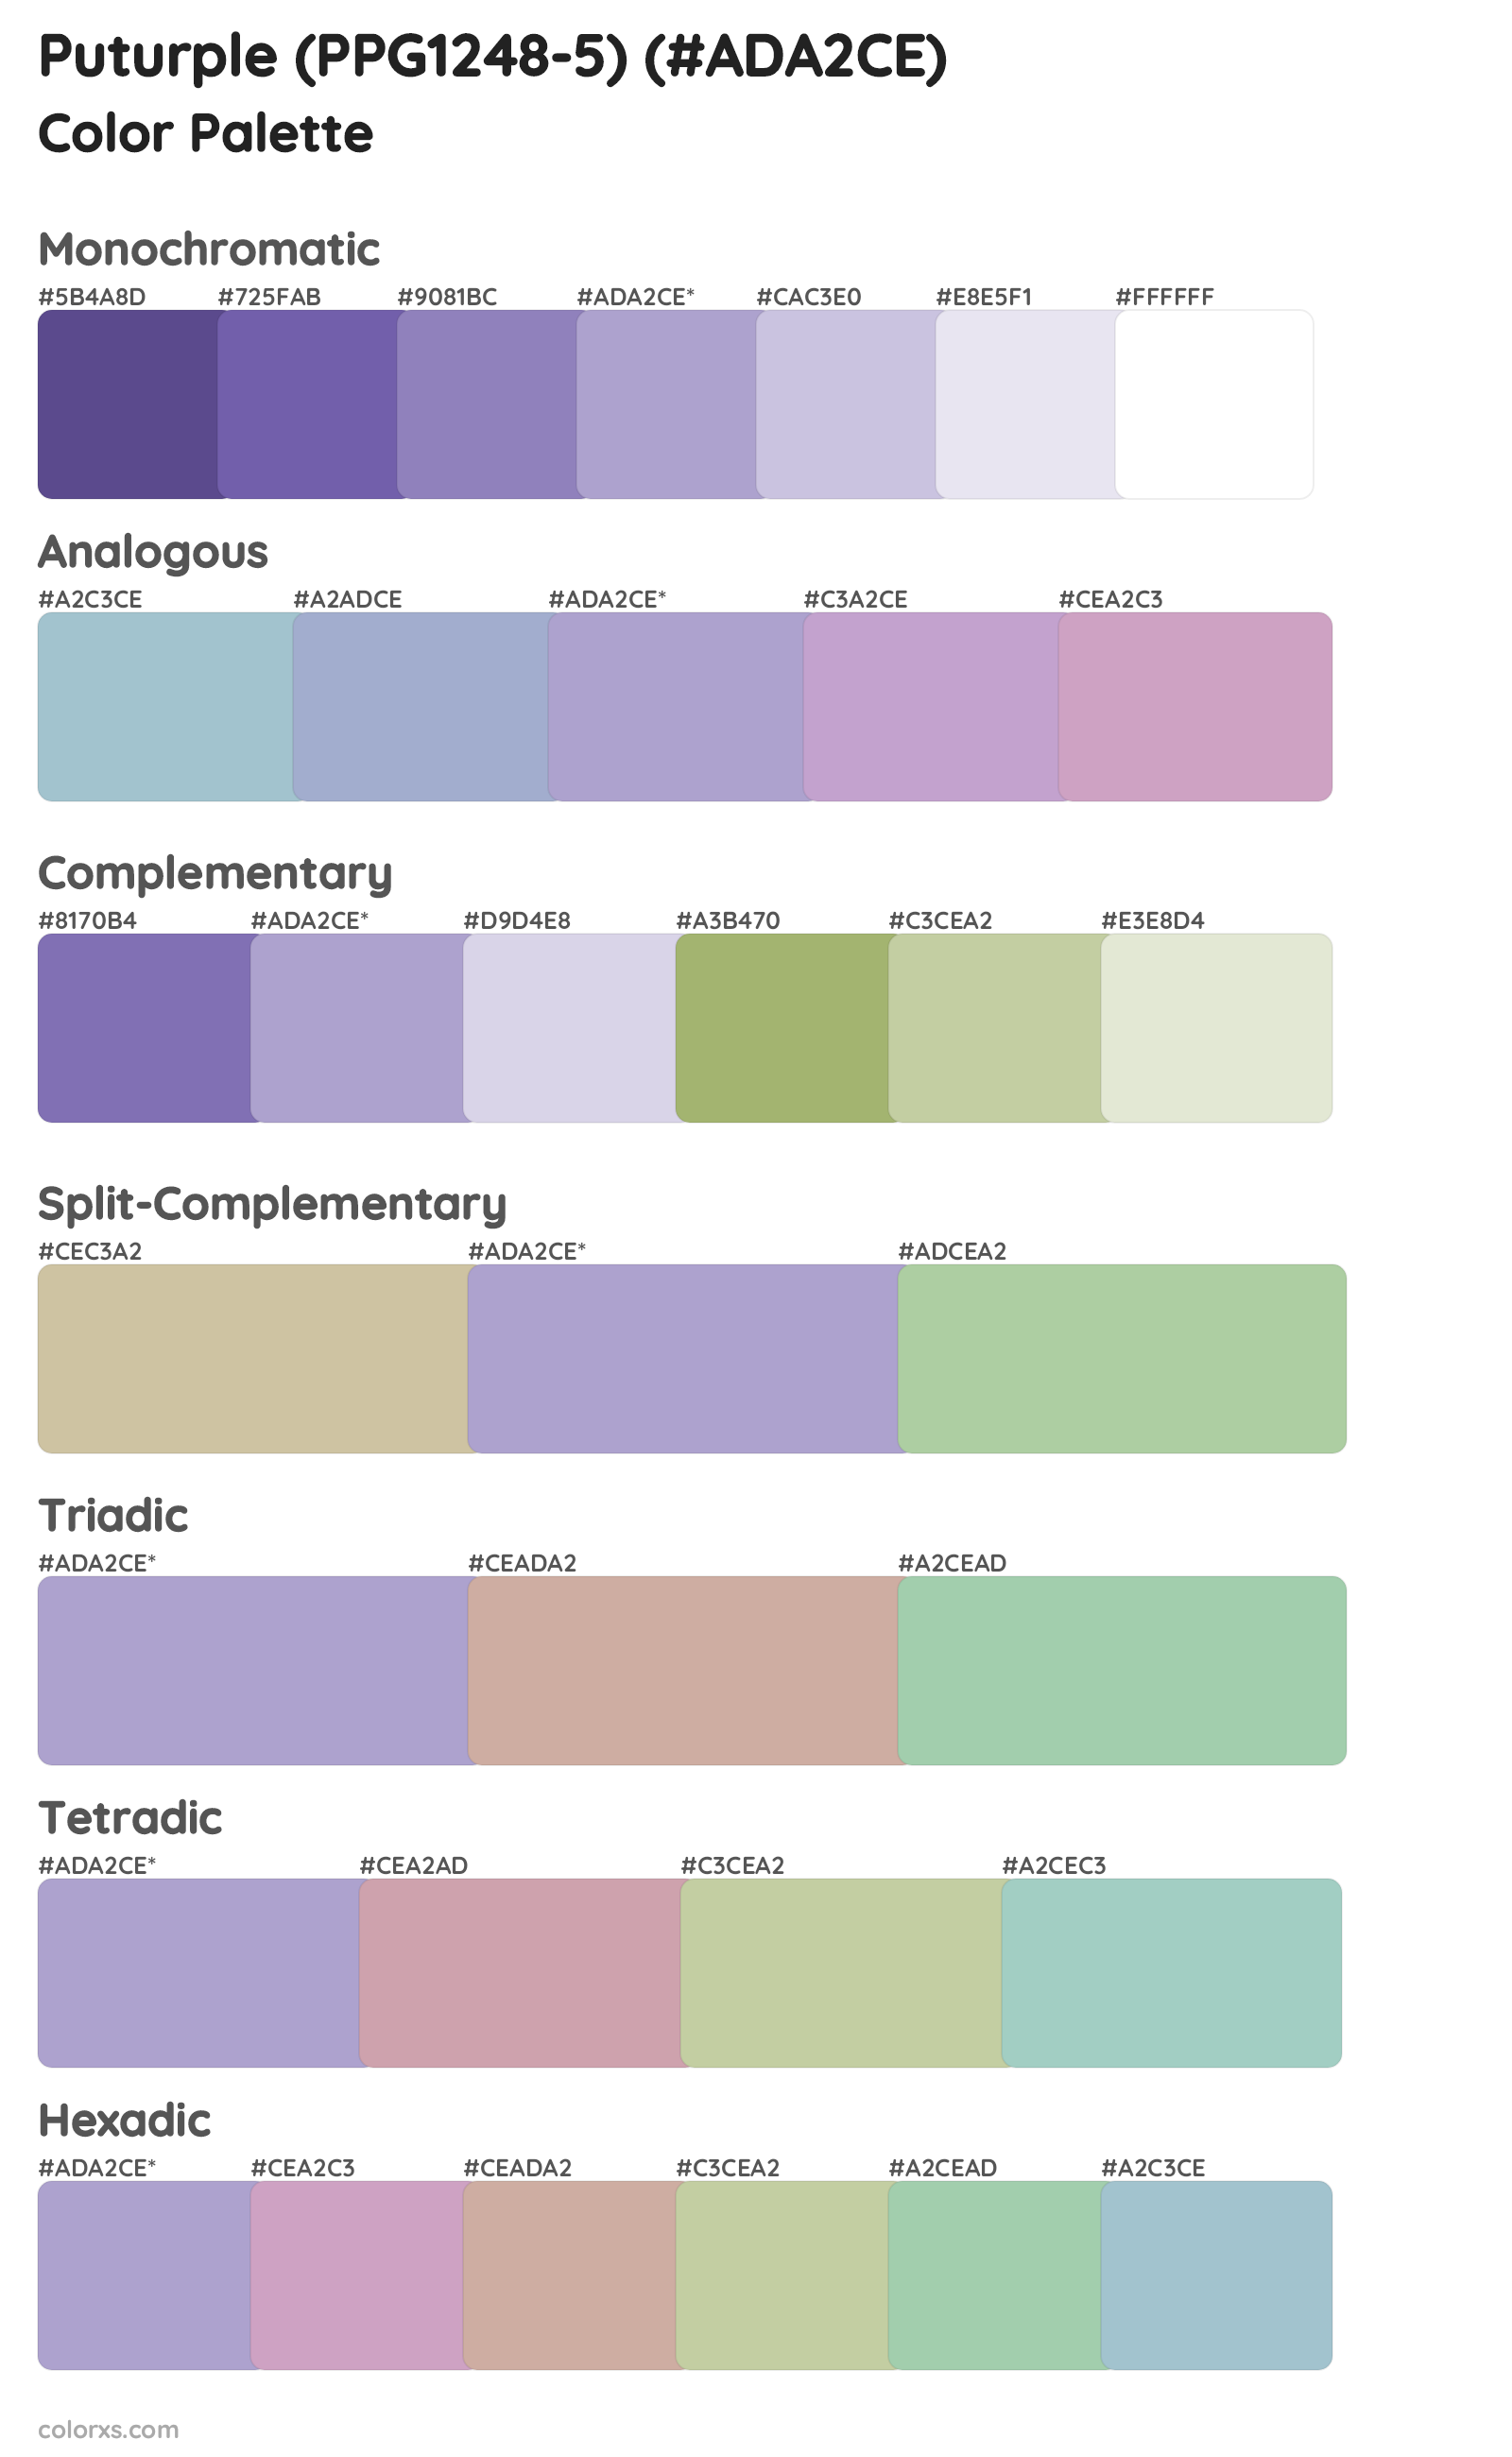 Puturple (PPG1248-5) Color Scheme Palettes